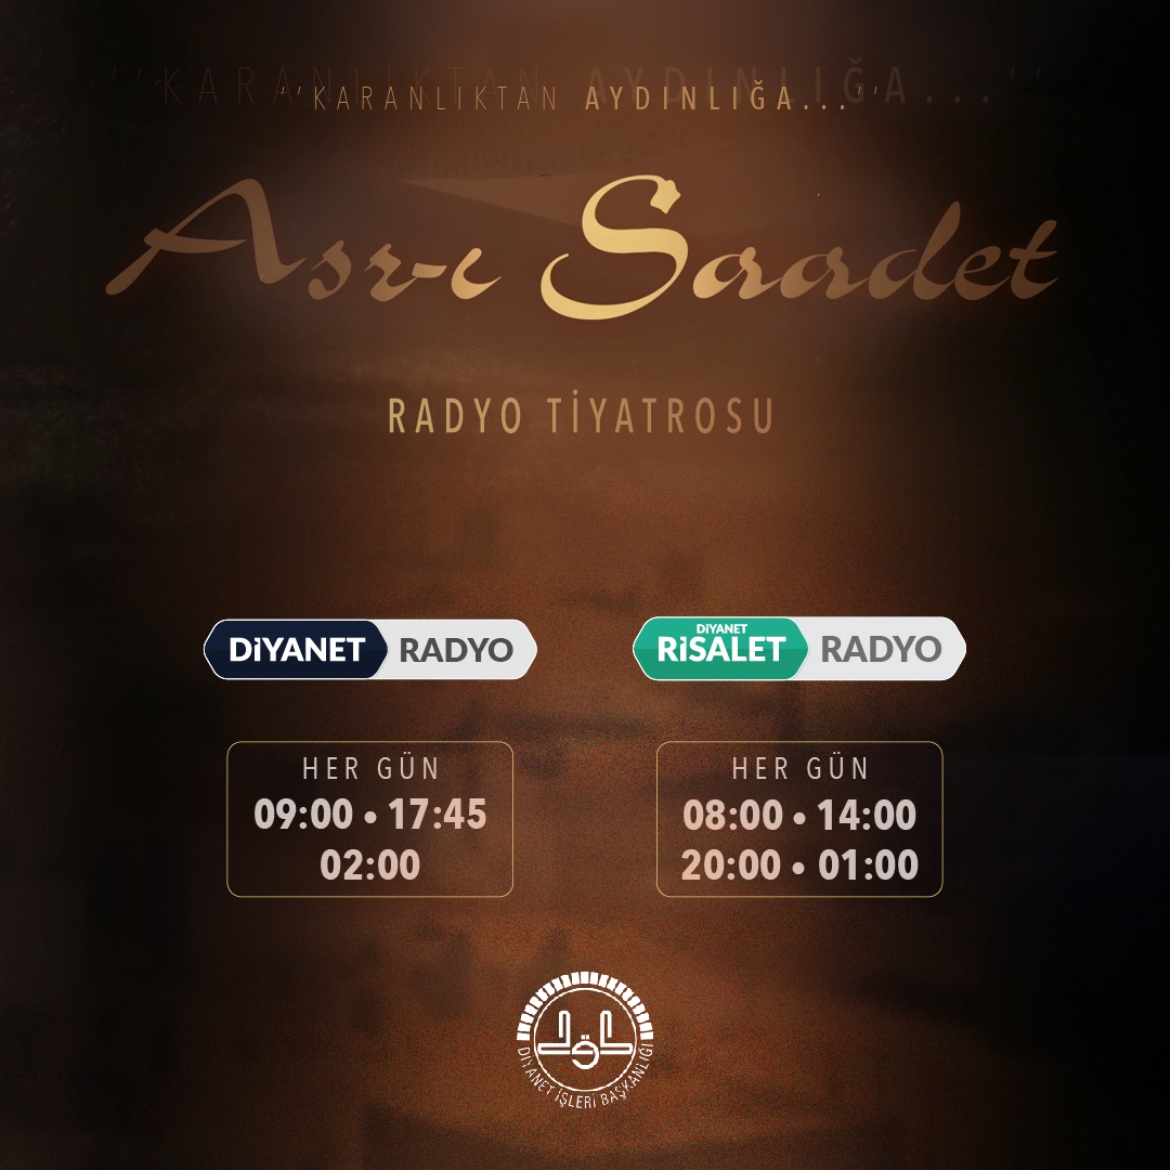 “Karanlıktan Aydınlığa Asr-ı Saadet” radyo tiyatrosu dinleyiciyle buluştu